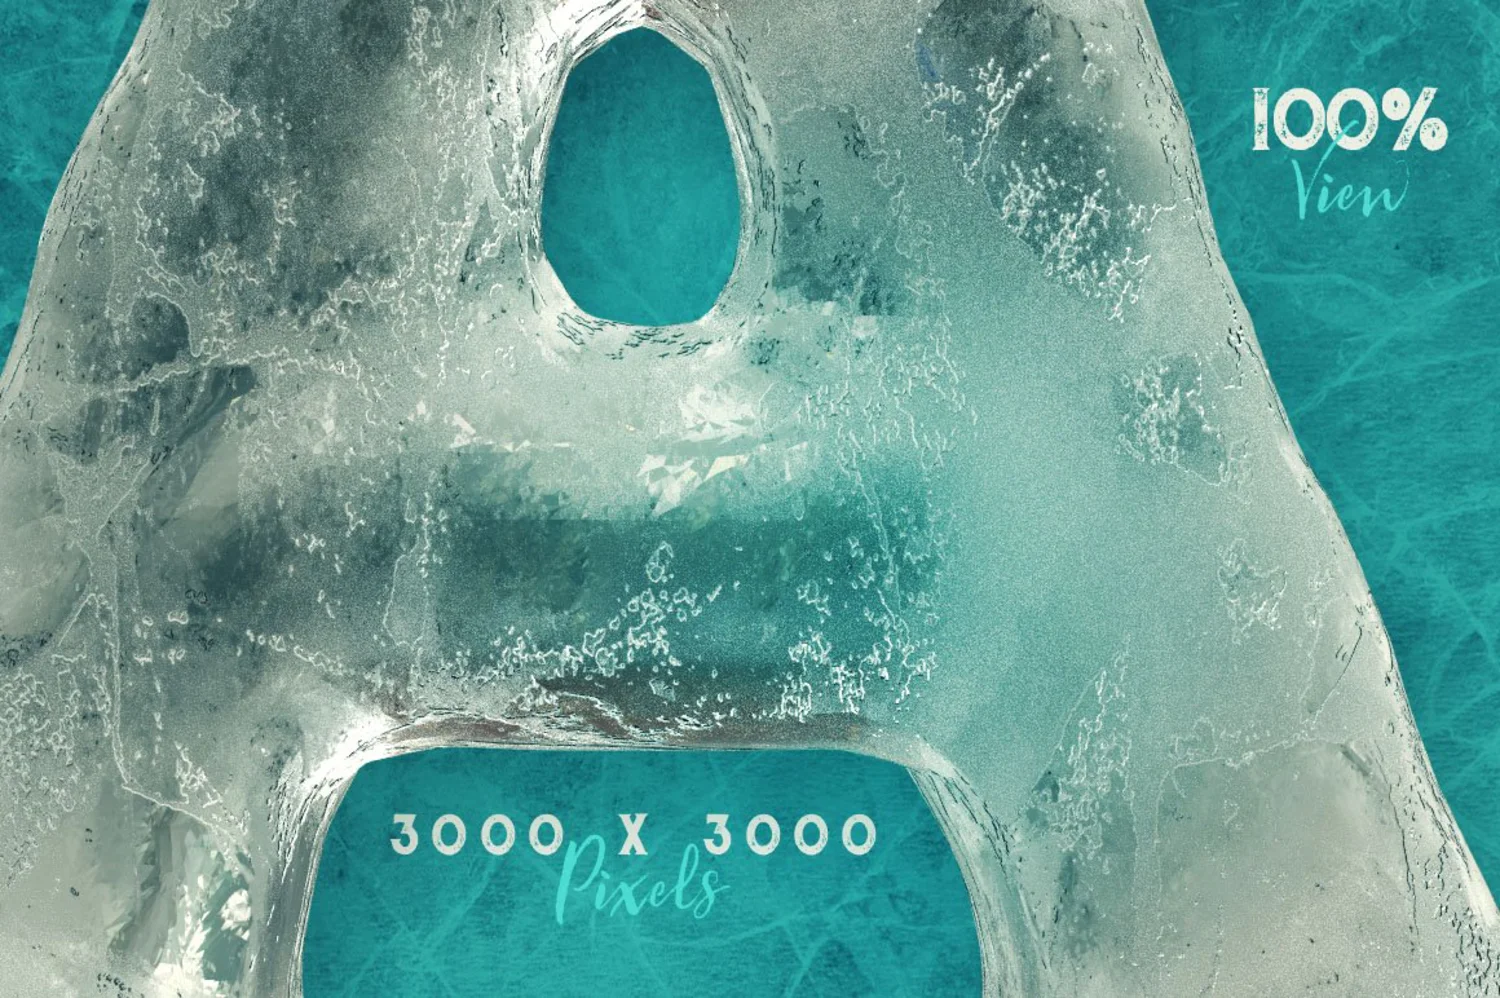 2293 艺术冰雕效果的3D装饰性大写英文字体 Ice Ice Baby – 3D Lettering